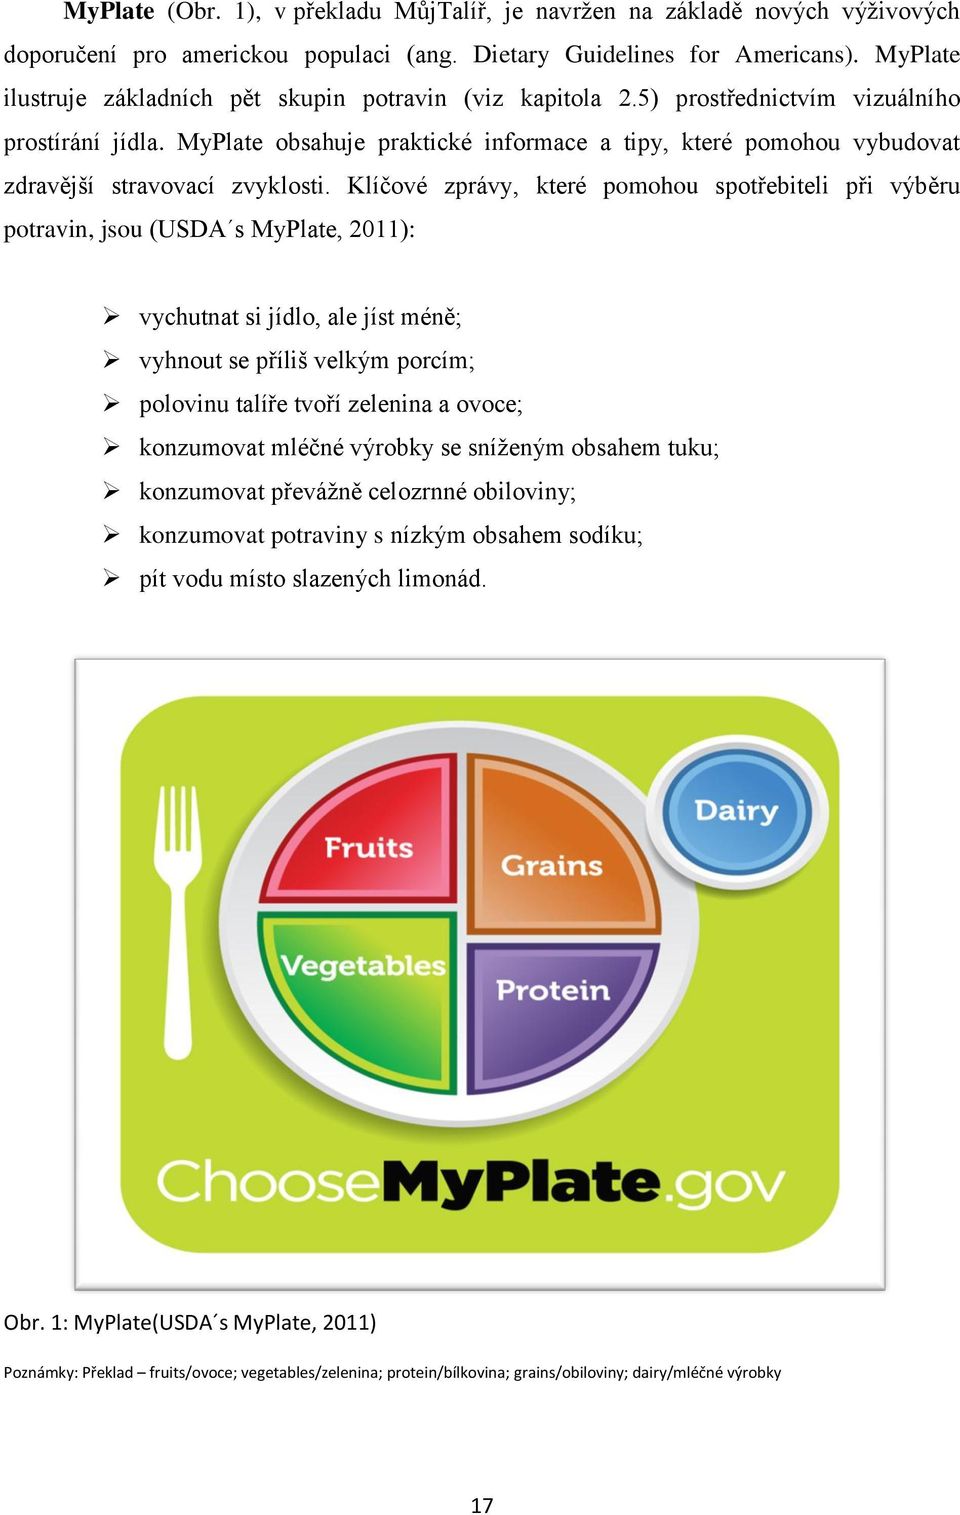 MyPlate obsahuje praktické informace a tipy, které pomohou vybudovat zdravější stravovací zvyklosti.